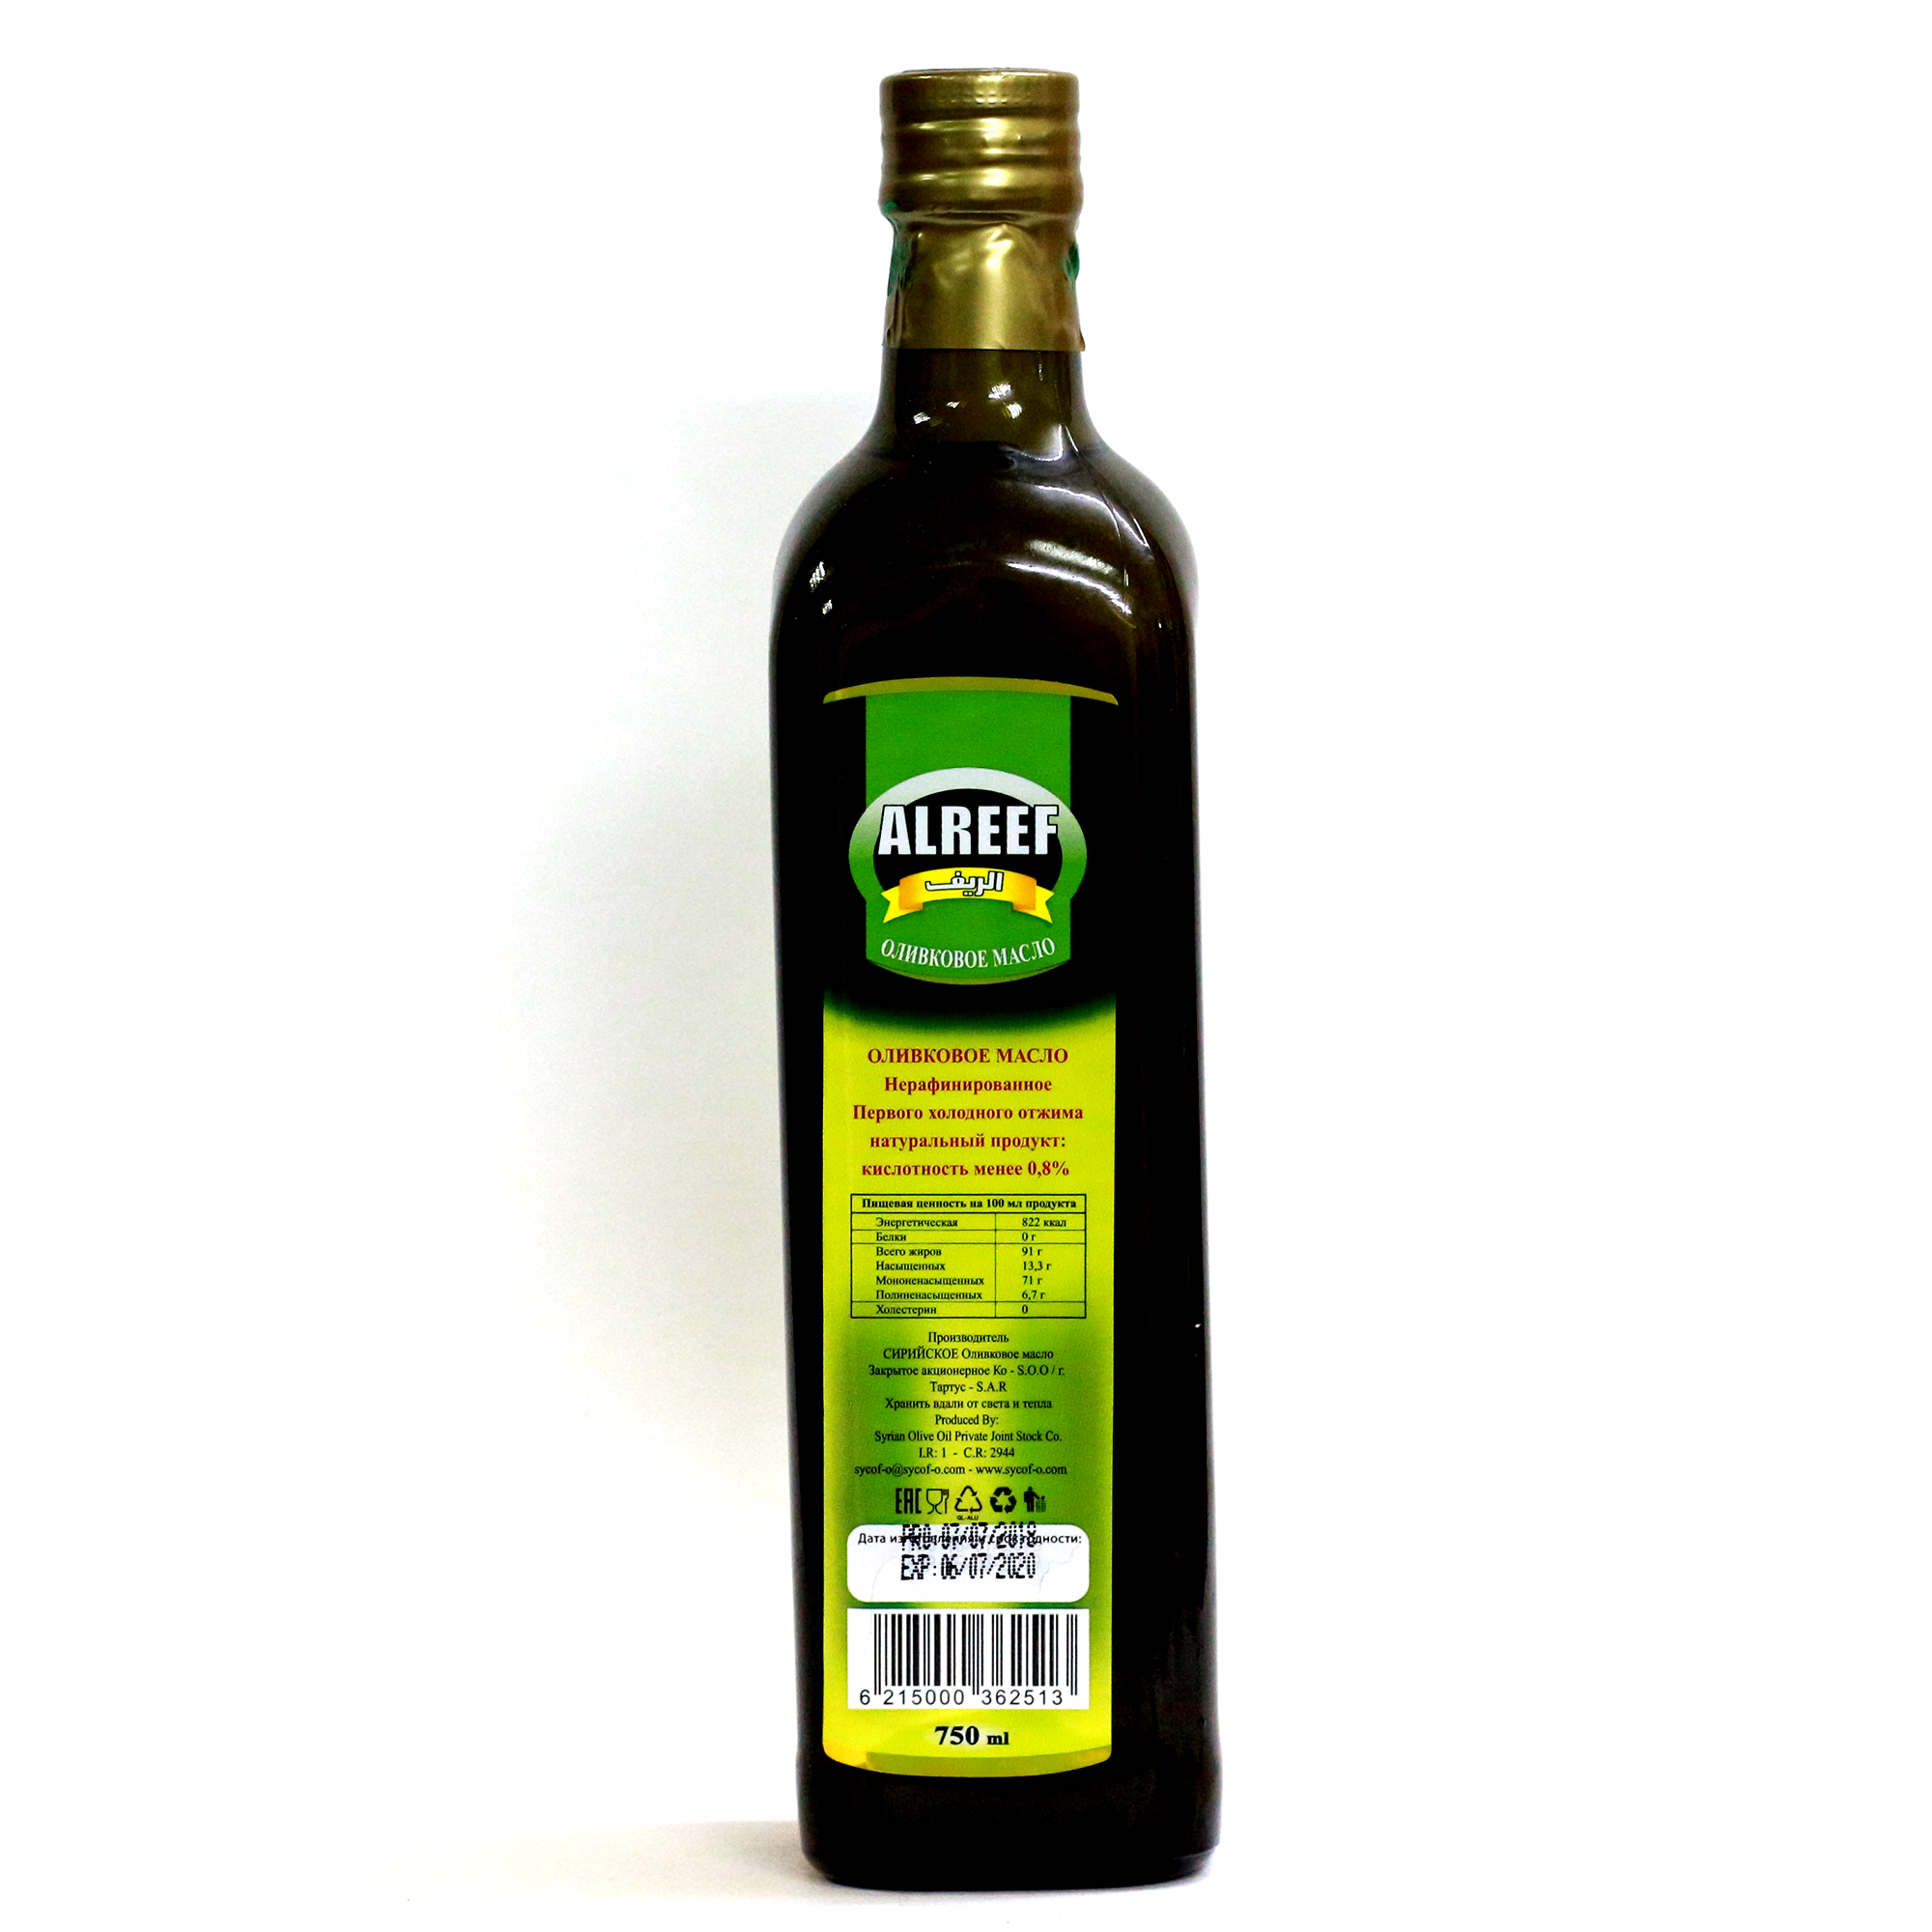 Жарить на оливковом масле холодного отжима